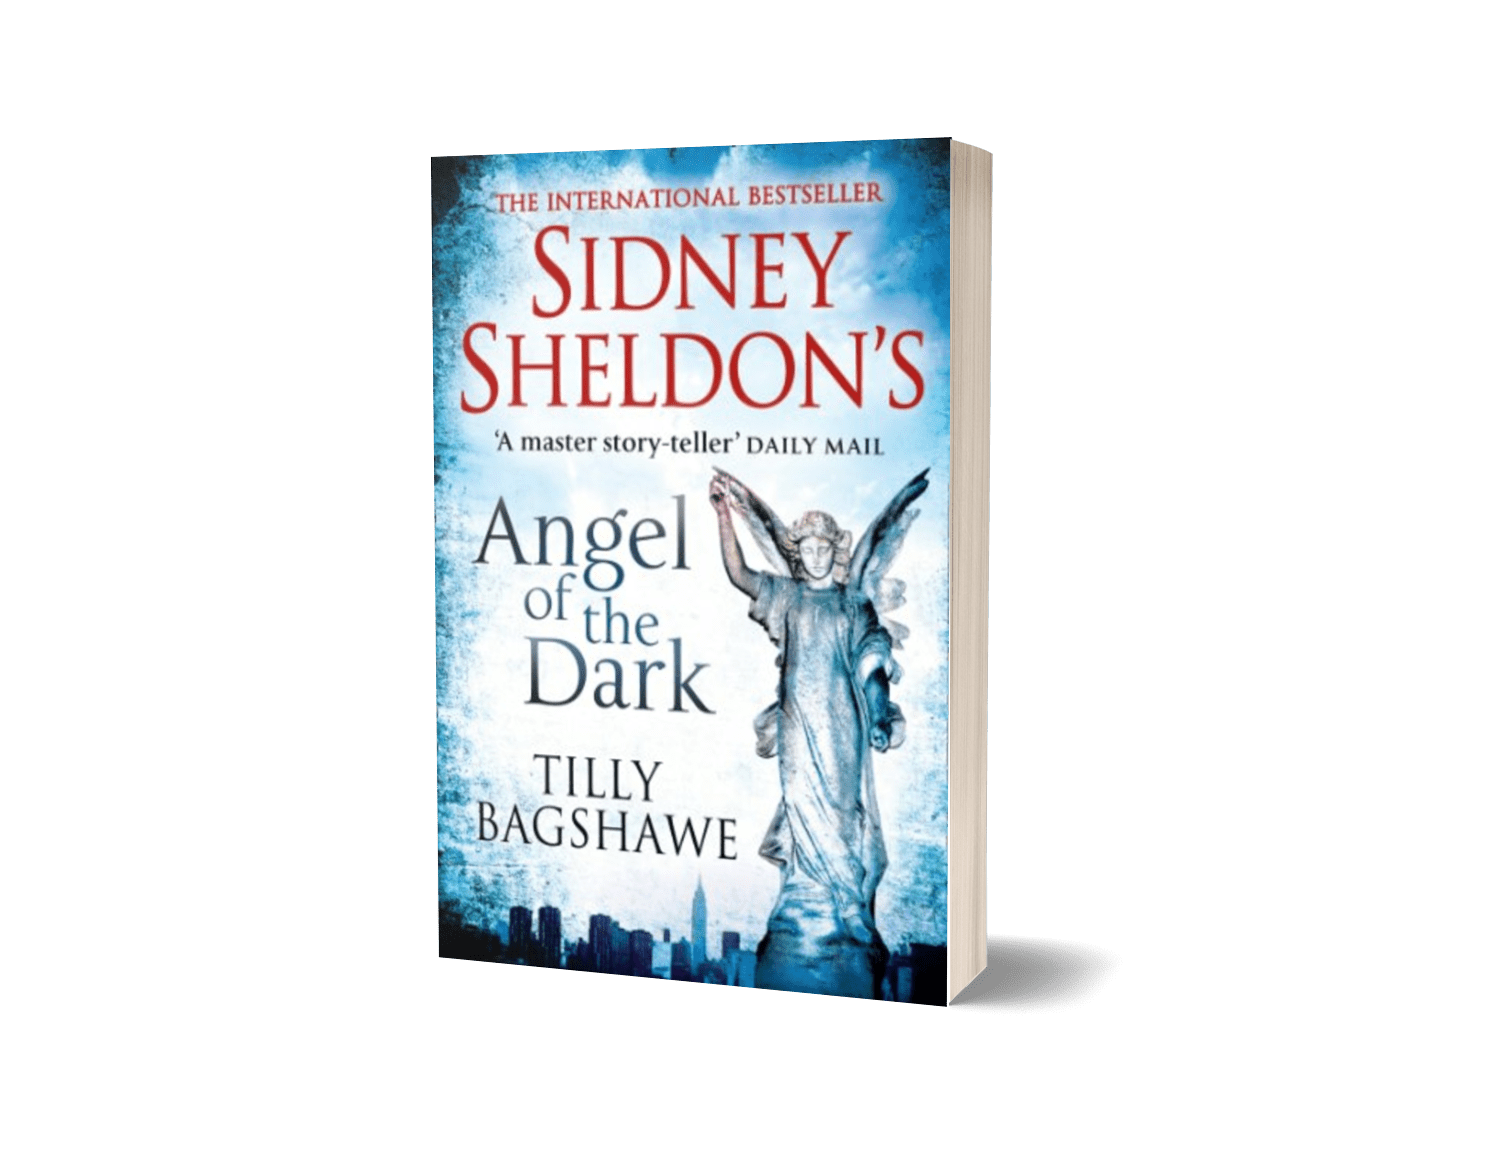 Angel of the Dark by Sidney Sheldon